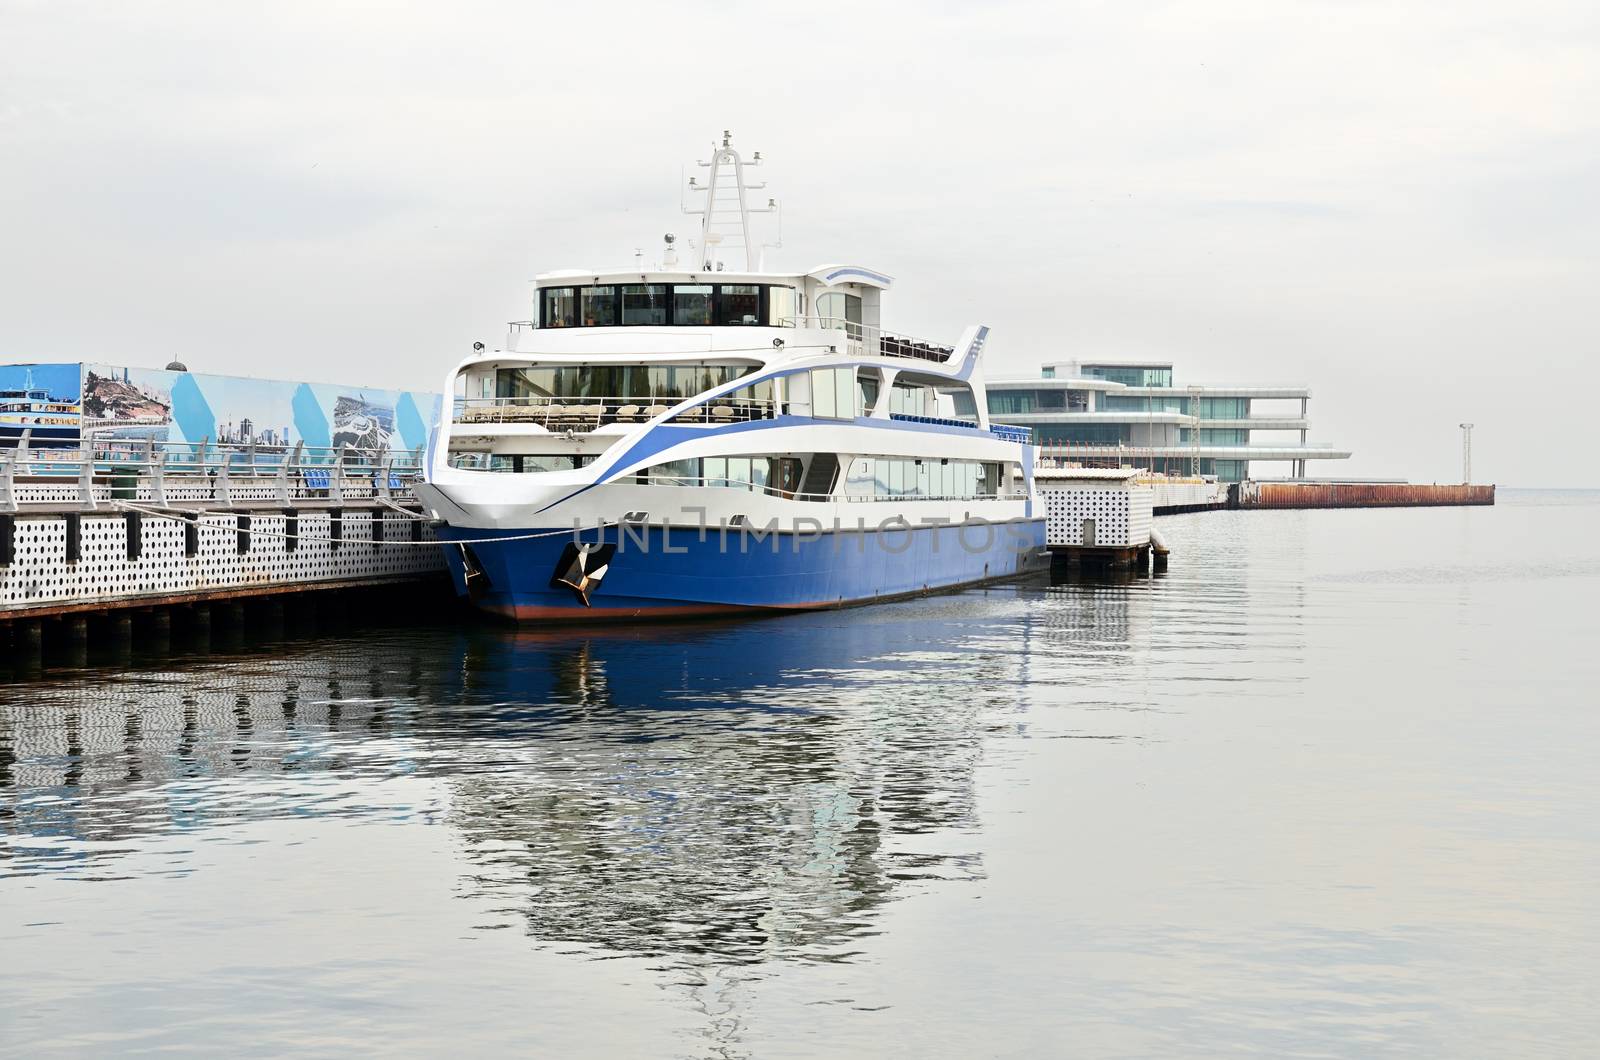 Pleasure boat on the Caspian Sea in Baku